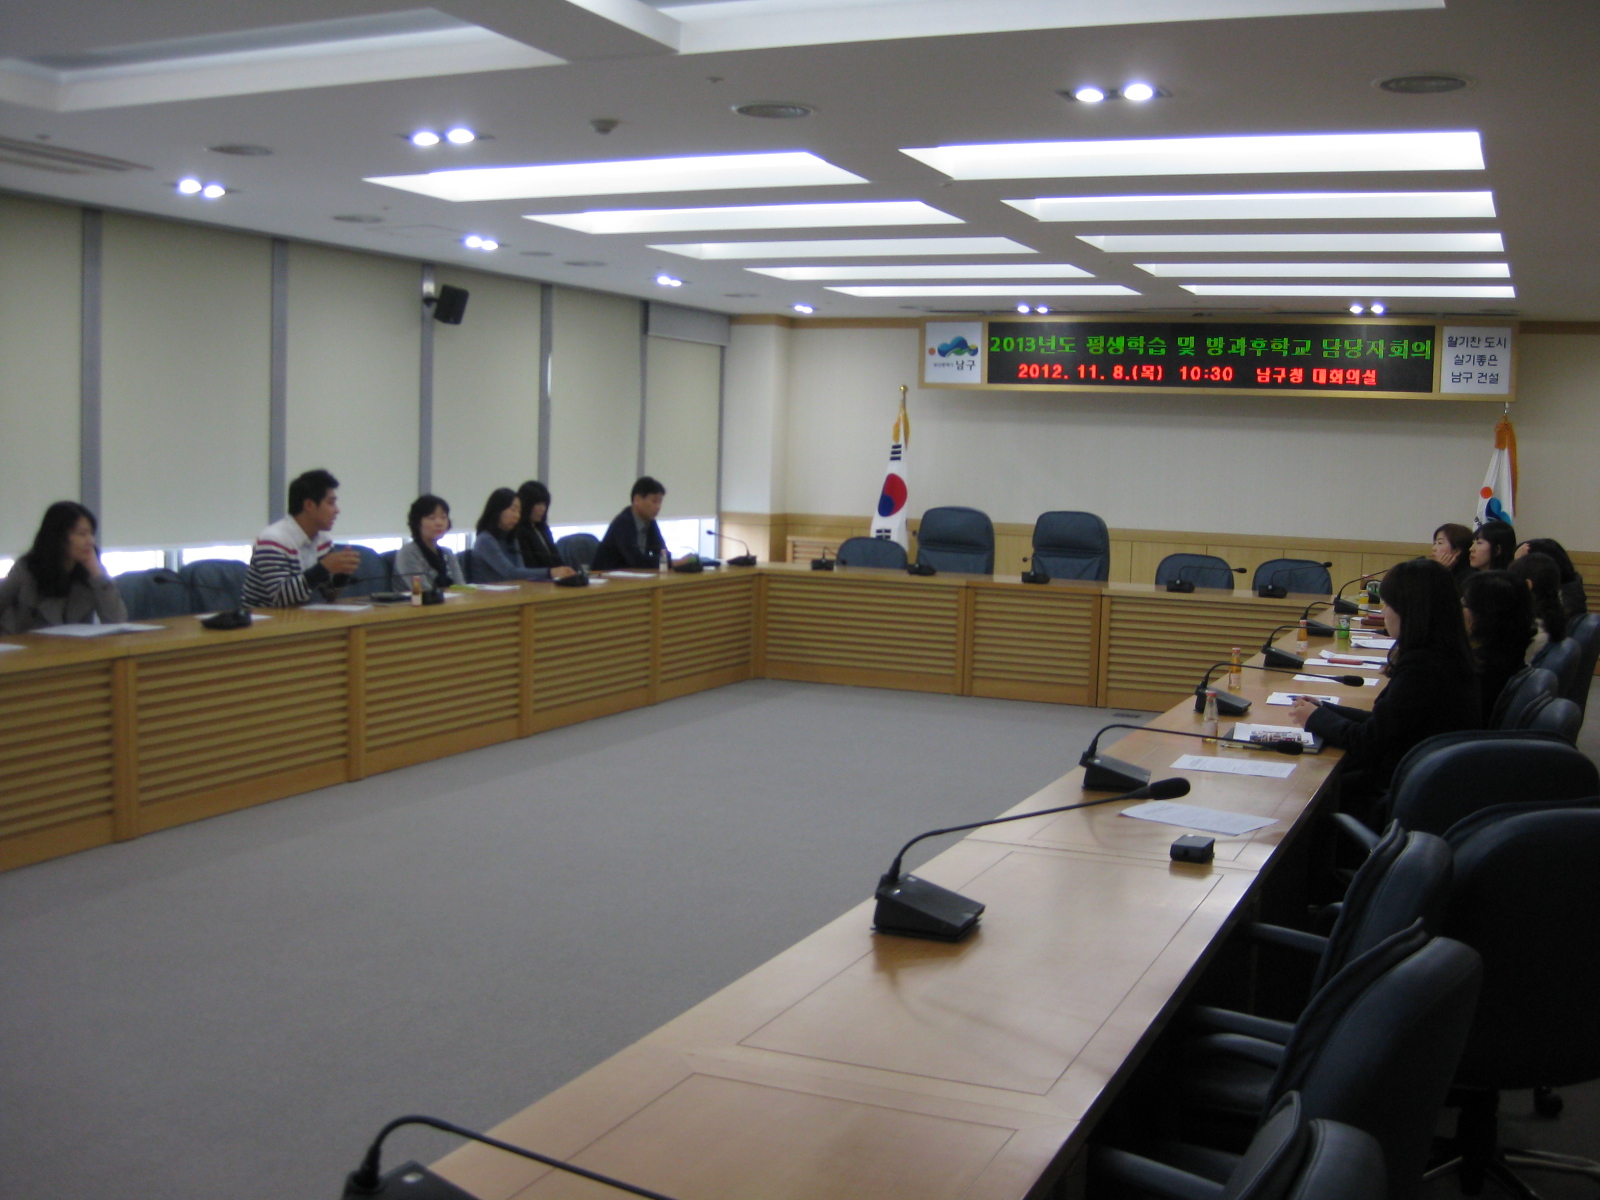 2013년도 평생학습 및 방과후학교 관련 부서(사업소) 담당자회의 개최 사진자료